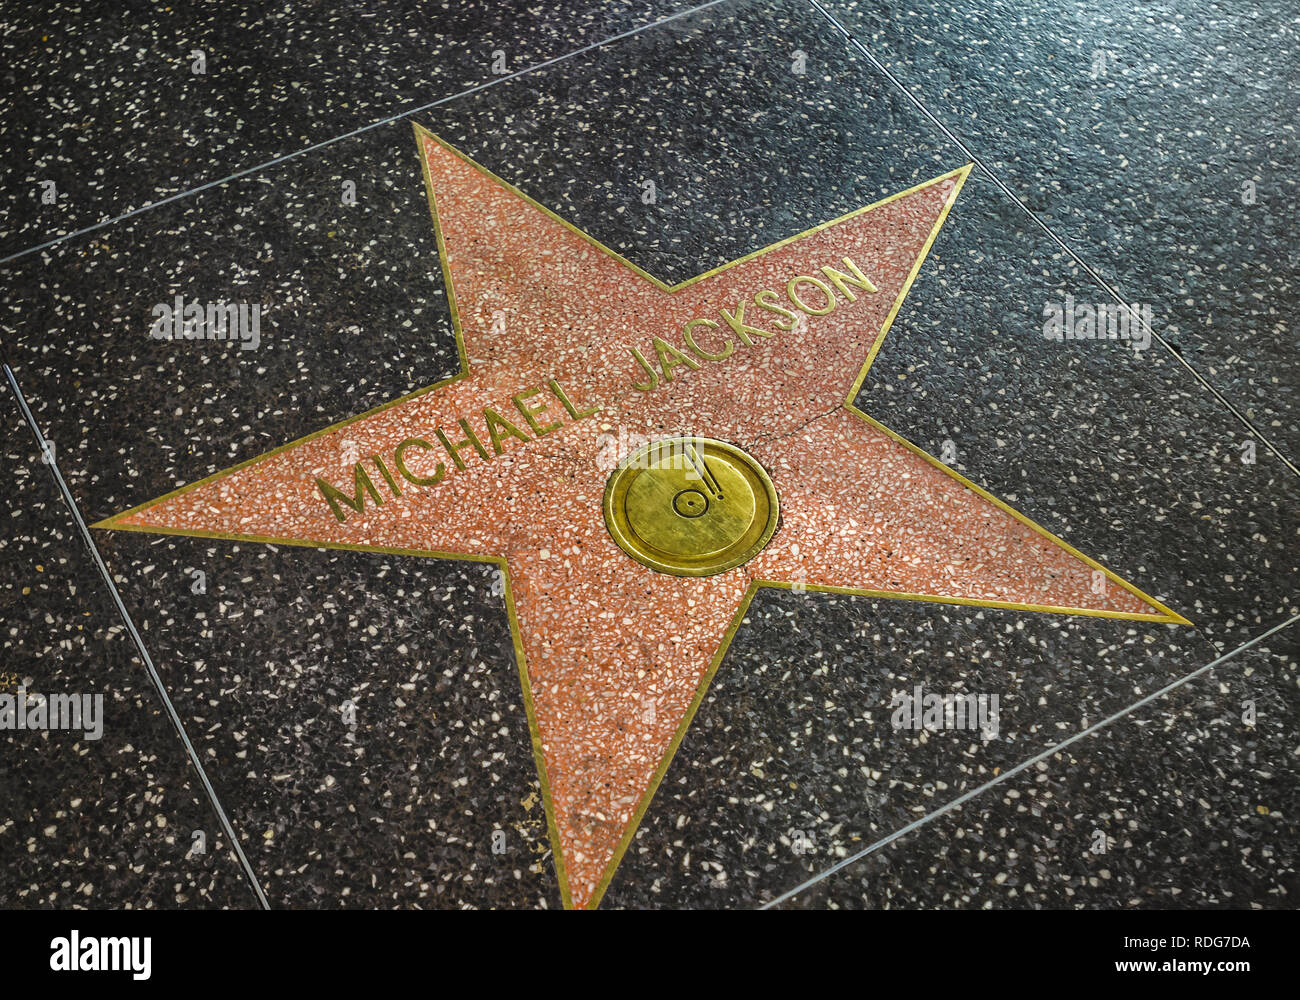 Los Angeles, Californie, USA - 09 juin 2011 : Nom de la pop star Michael Jackson sur le Walk of Fame d'Hollywood. Jackson's star, défini en 1984. Banque D'Images